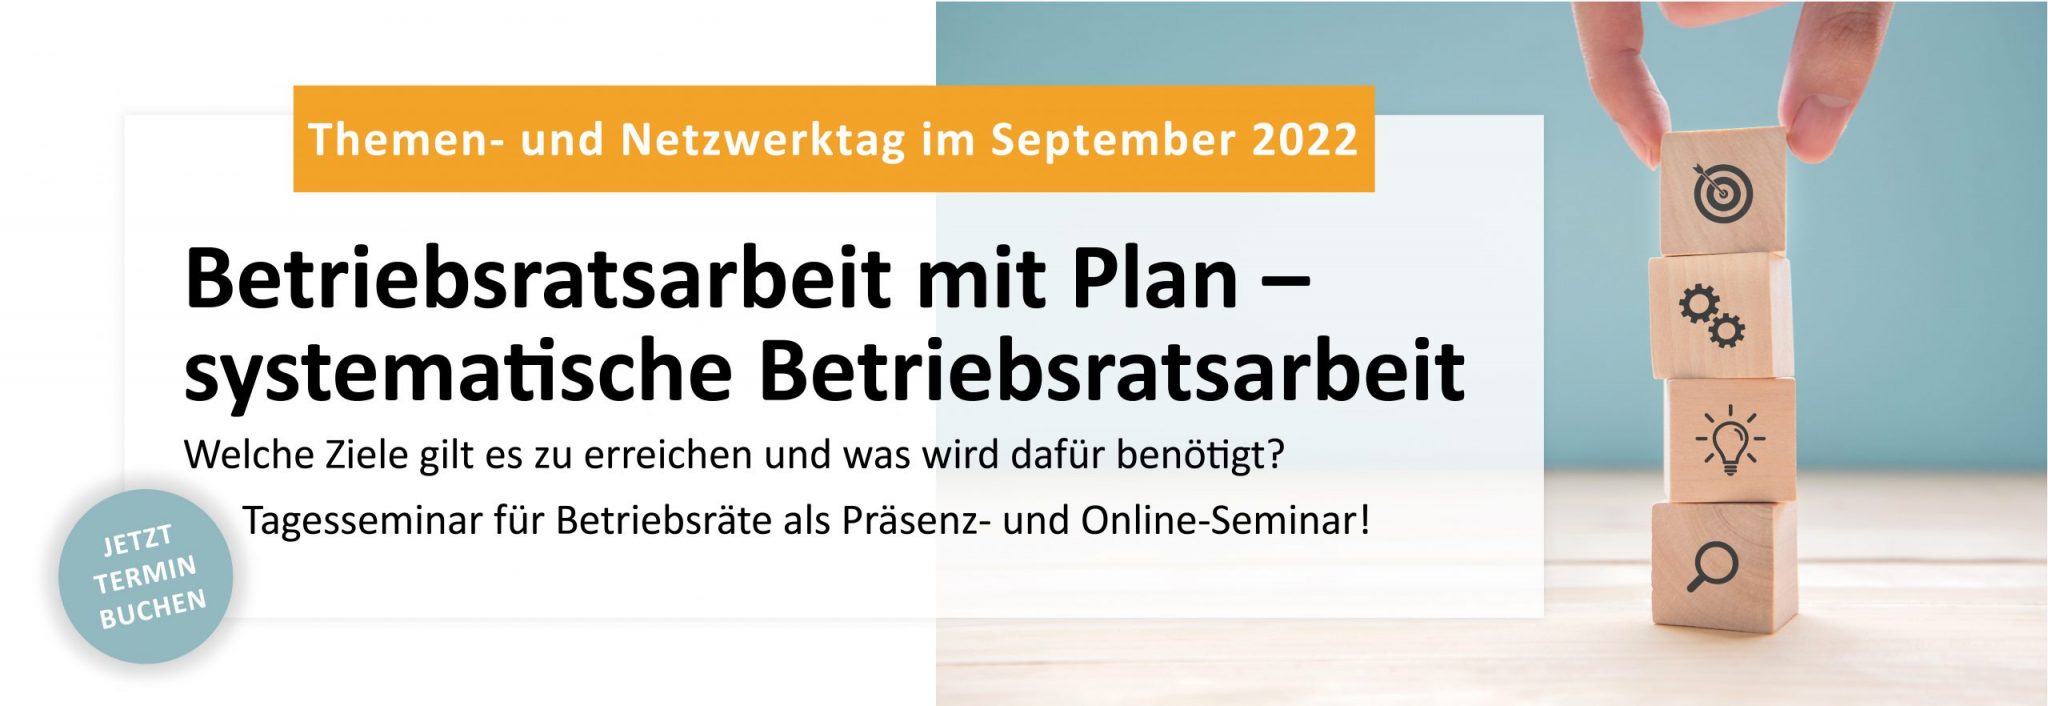 Themen- und Netzwerktag 2022 Betriebsratsarbeit mit Plan Tagesseminar